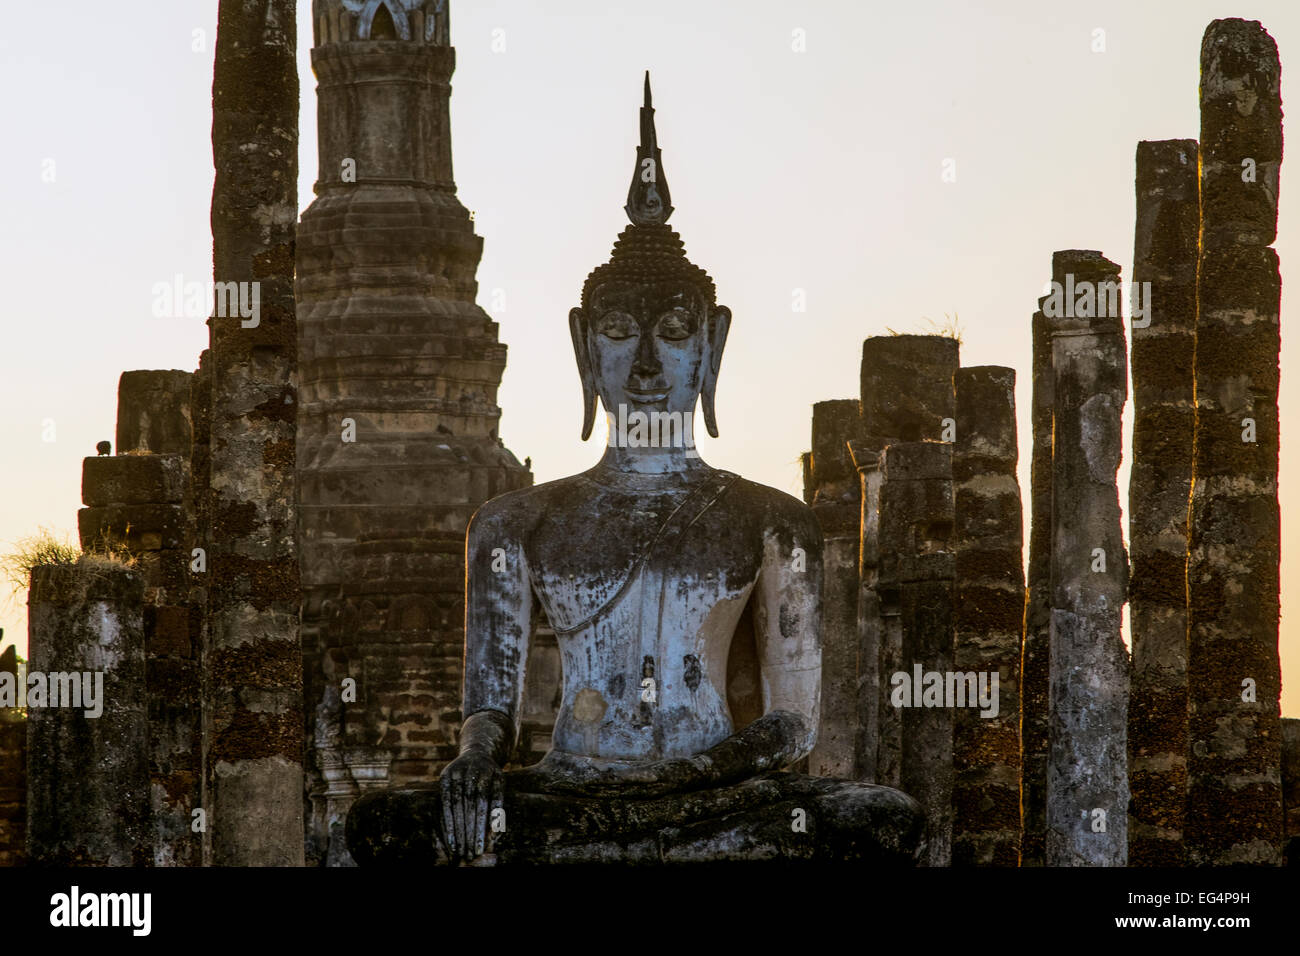 L'Asie. La Thaïlande, l'ancienne capitale du Siam. Parc archéologique de Sukhothai, classé au Patrimoine Mondial de l'UNESCO. Wat Mahathat. Statue de Bouddha Banque D'Images